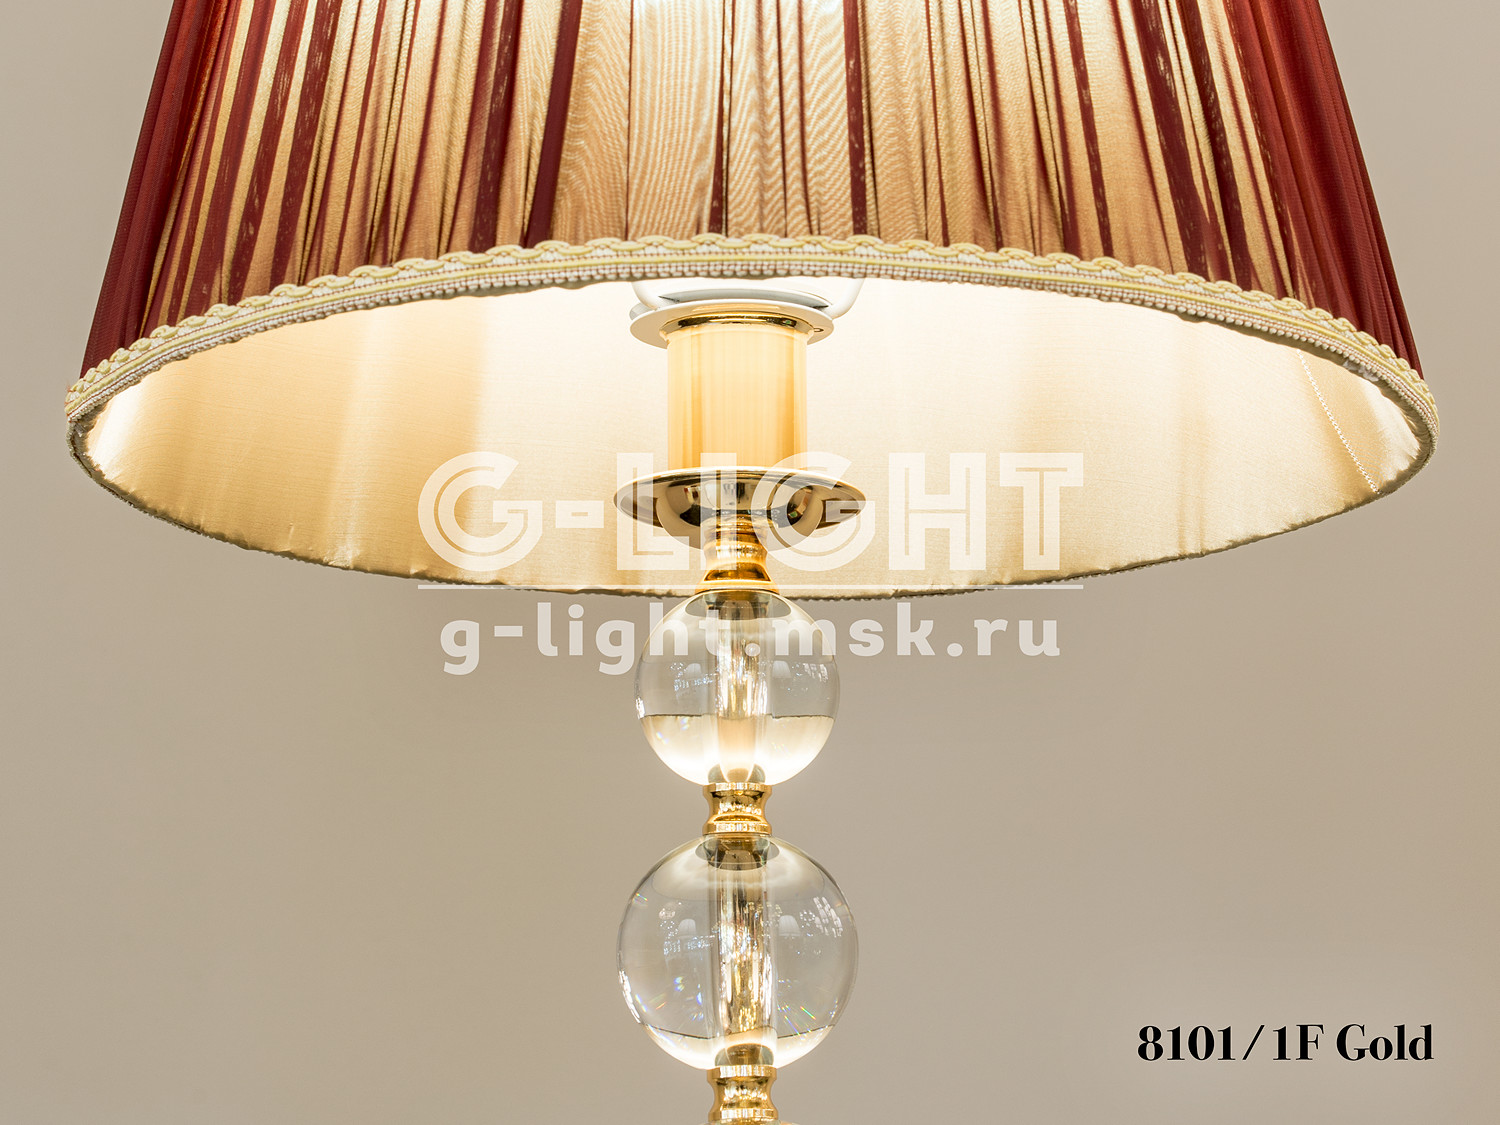 Торшер G-Light 8101/1F Gold - изображение 2